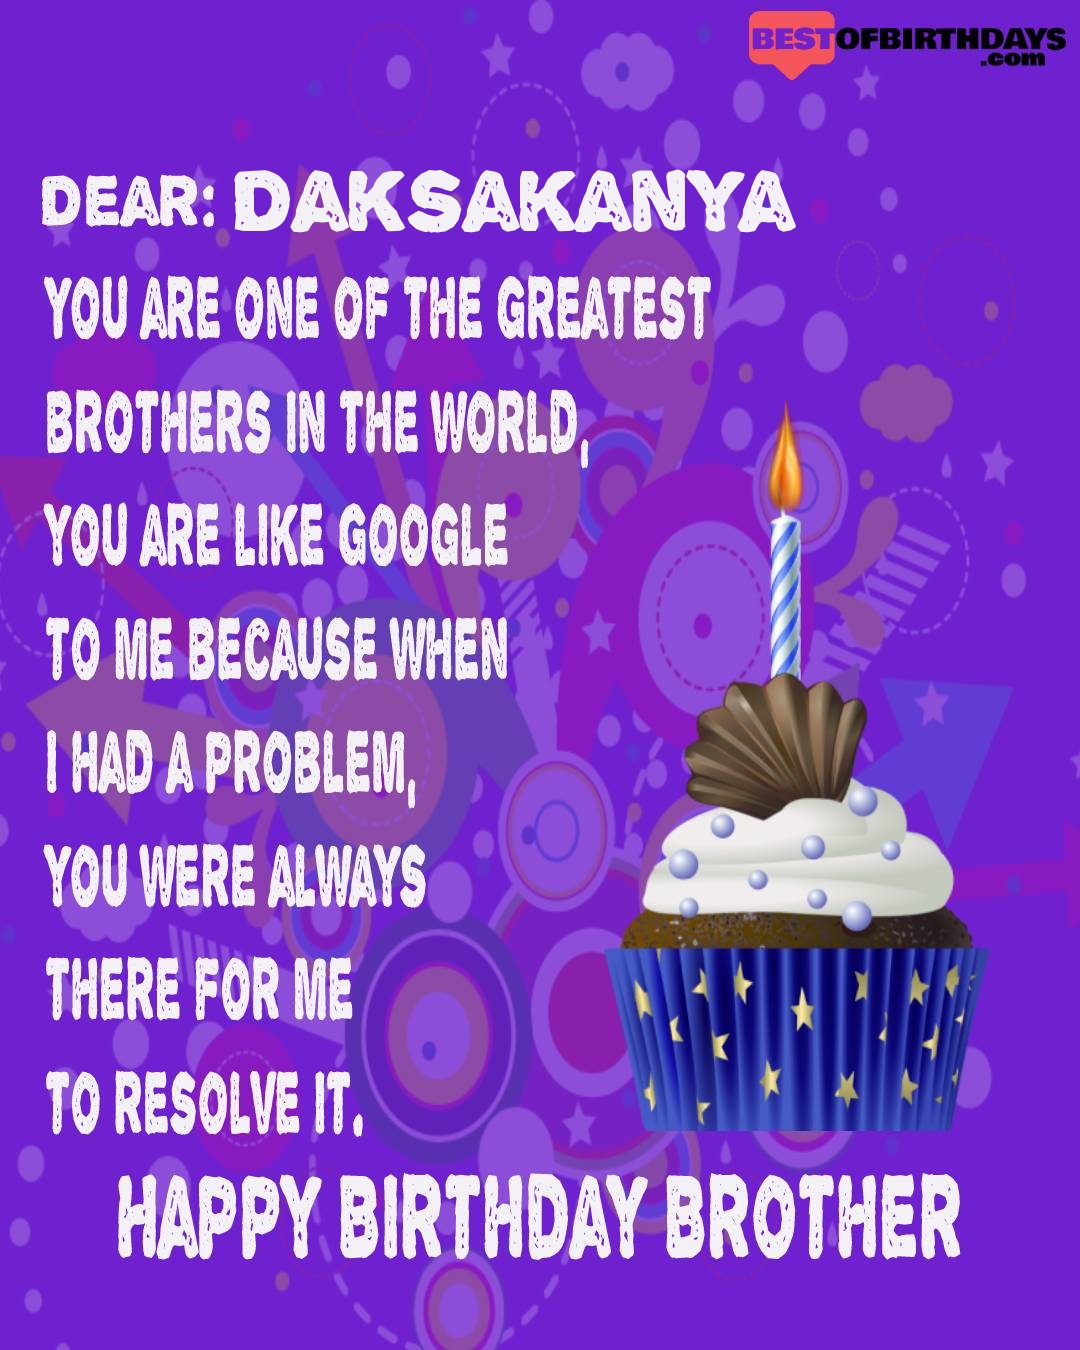 Happy birthday daksakanya bhai brother bro